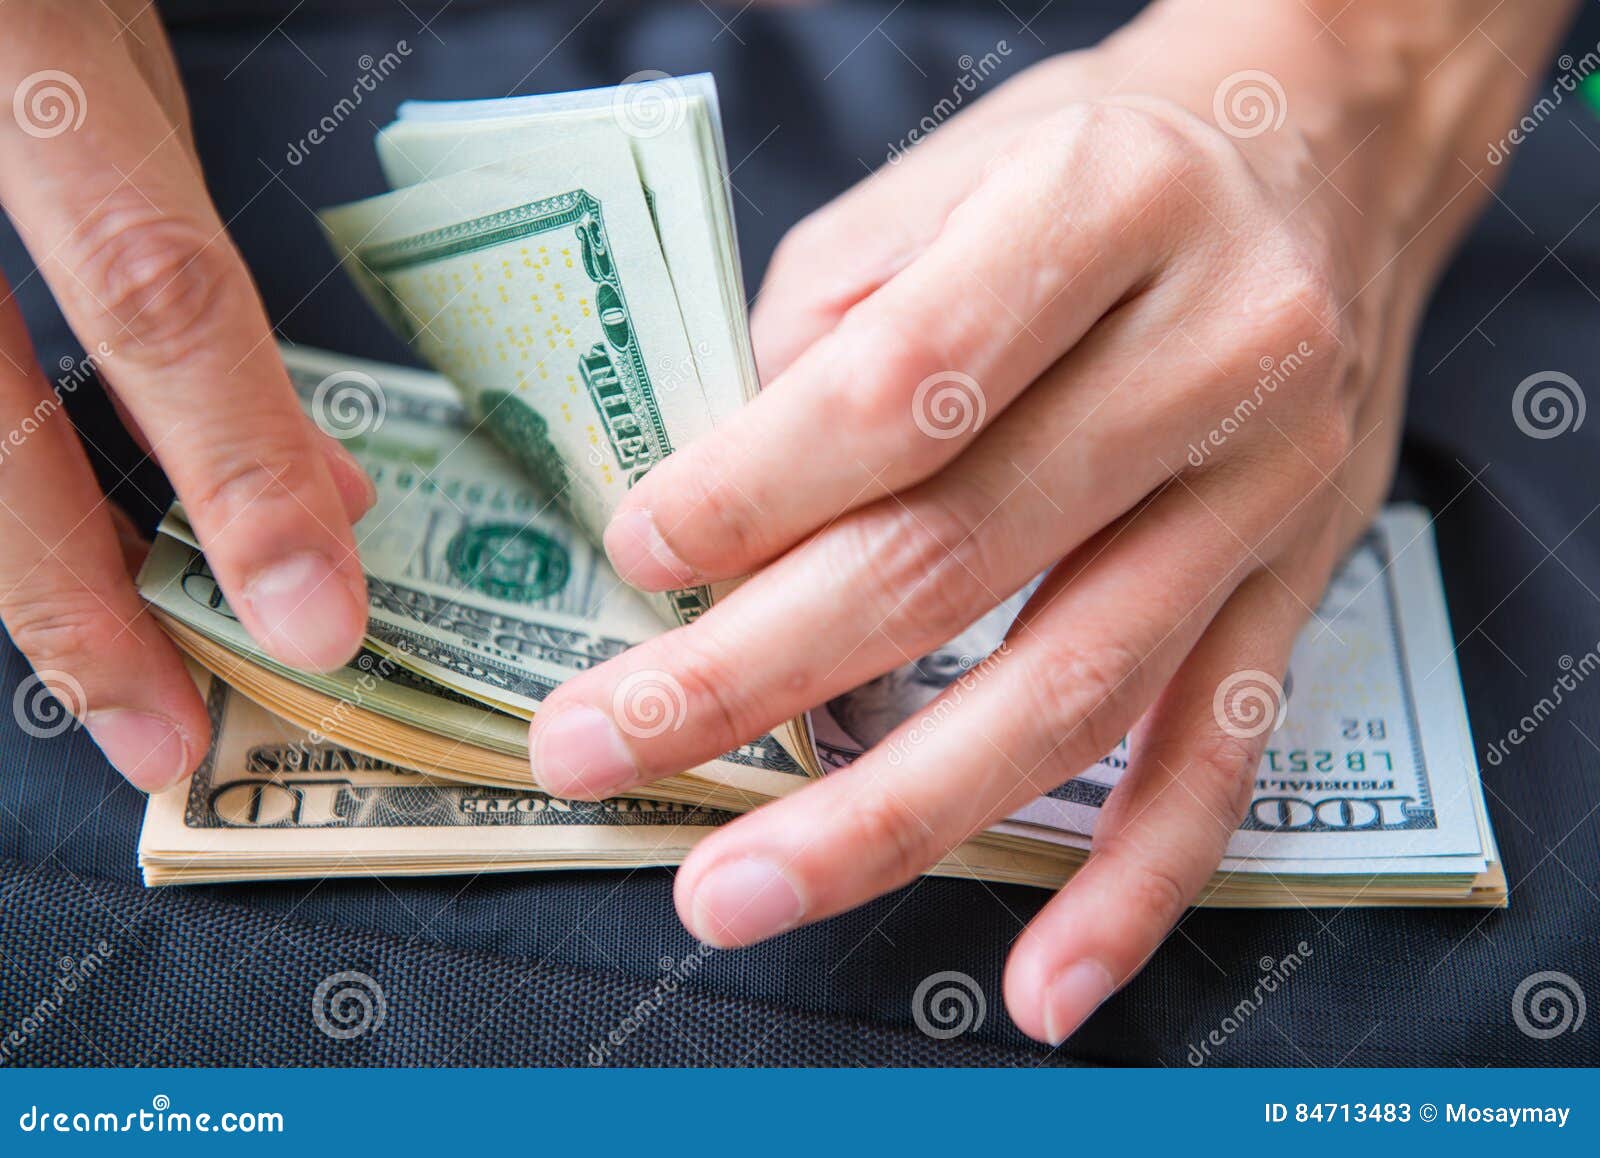 Наличными на руки на. Доллары в руках. Деньги в руках доллары. Маленькие доллары на руке. Доллары США В руке.